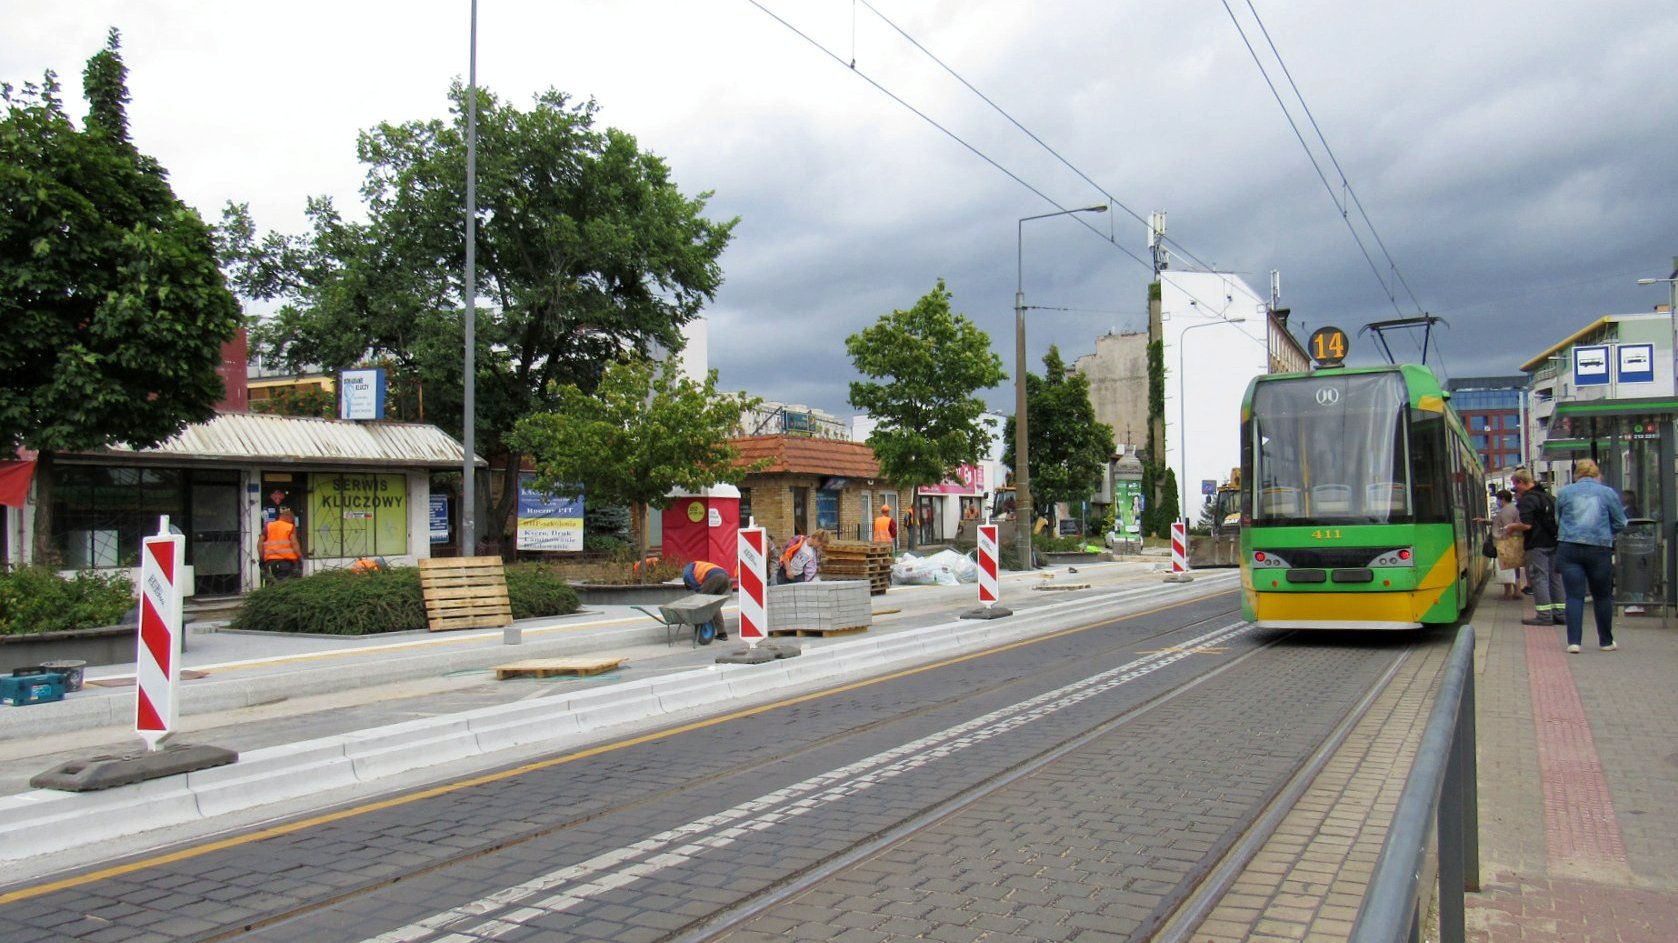 Dwa przystanki tramwajowe. Przy jednym stoi tramwaj, drugi przerabiany jest na wiedeński, widać płyty i słupki ostrzegające - grafika artykułu